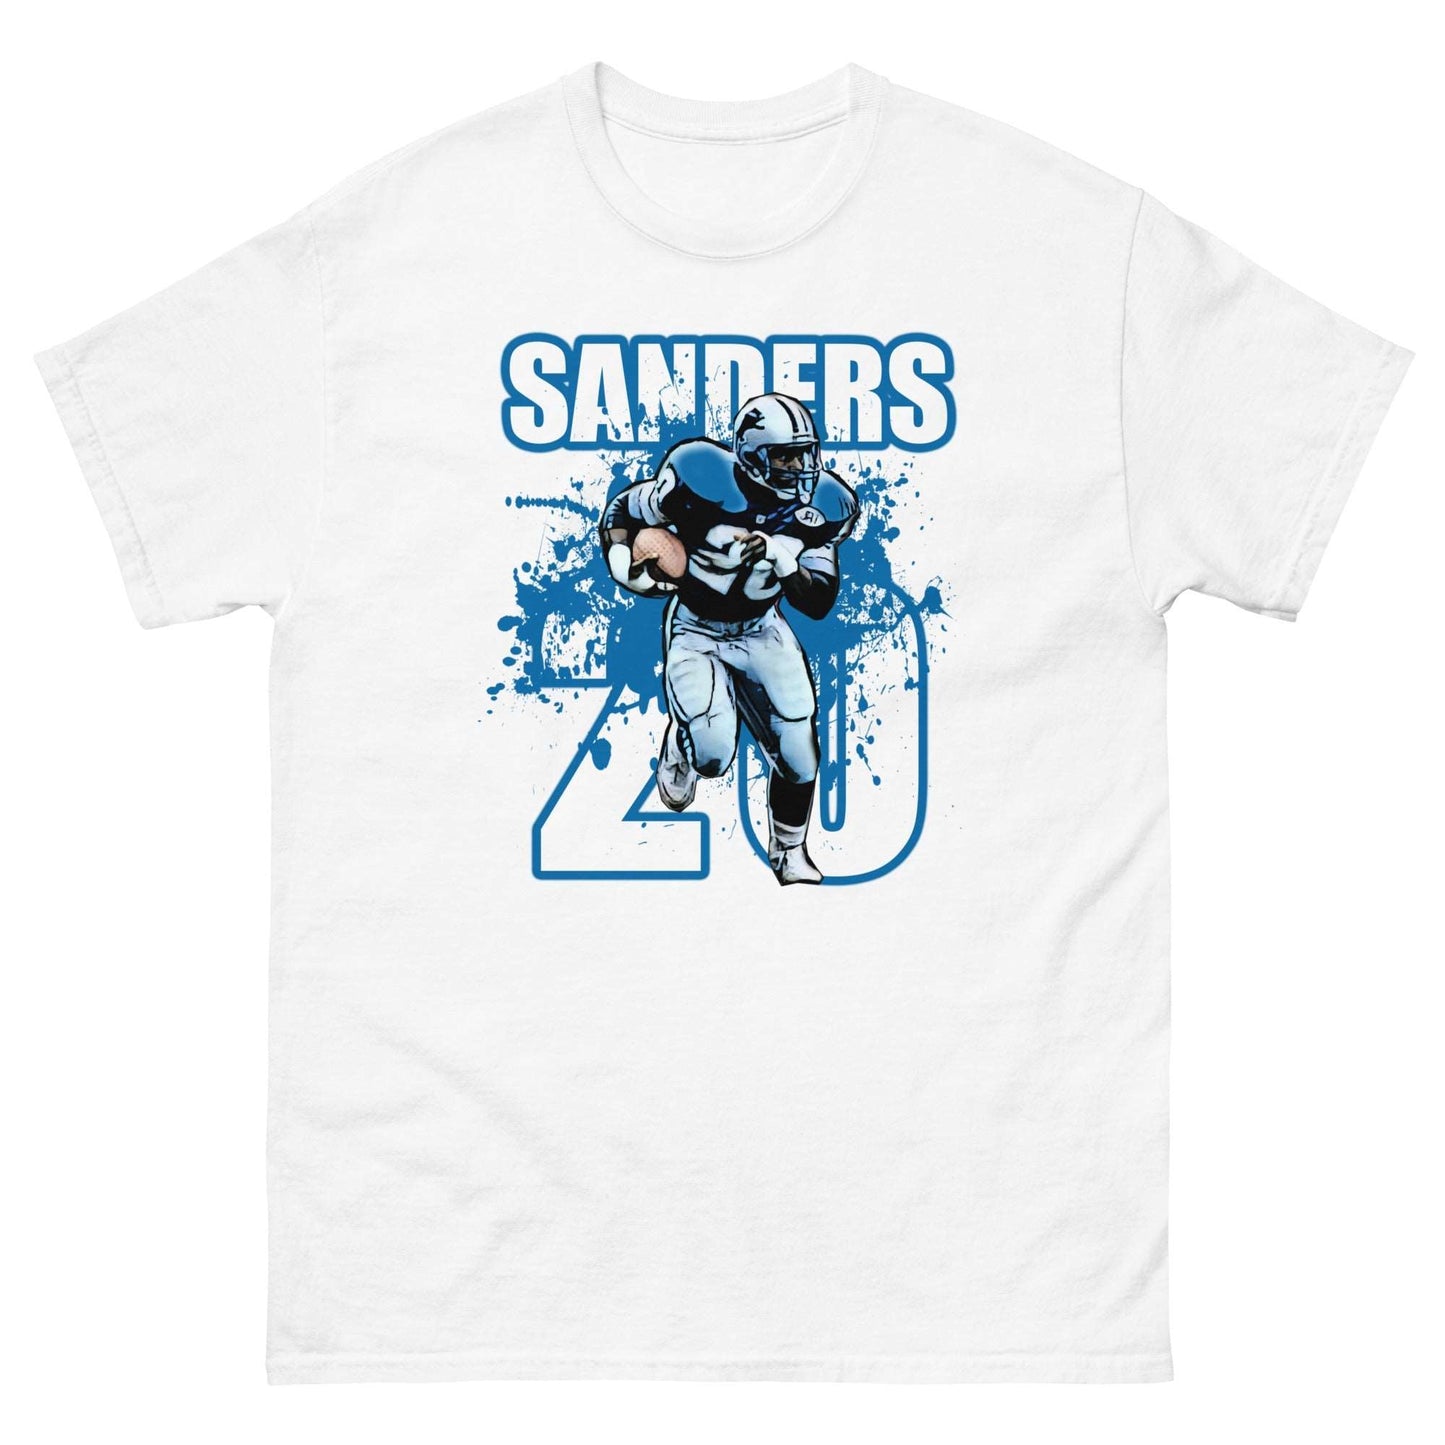 Barry Sanders - NFL Football Icon Tee - thenightmareinc